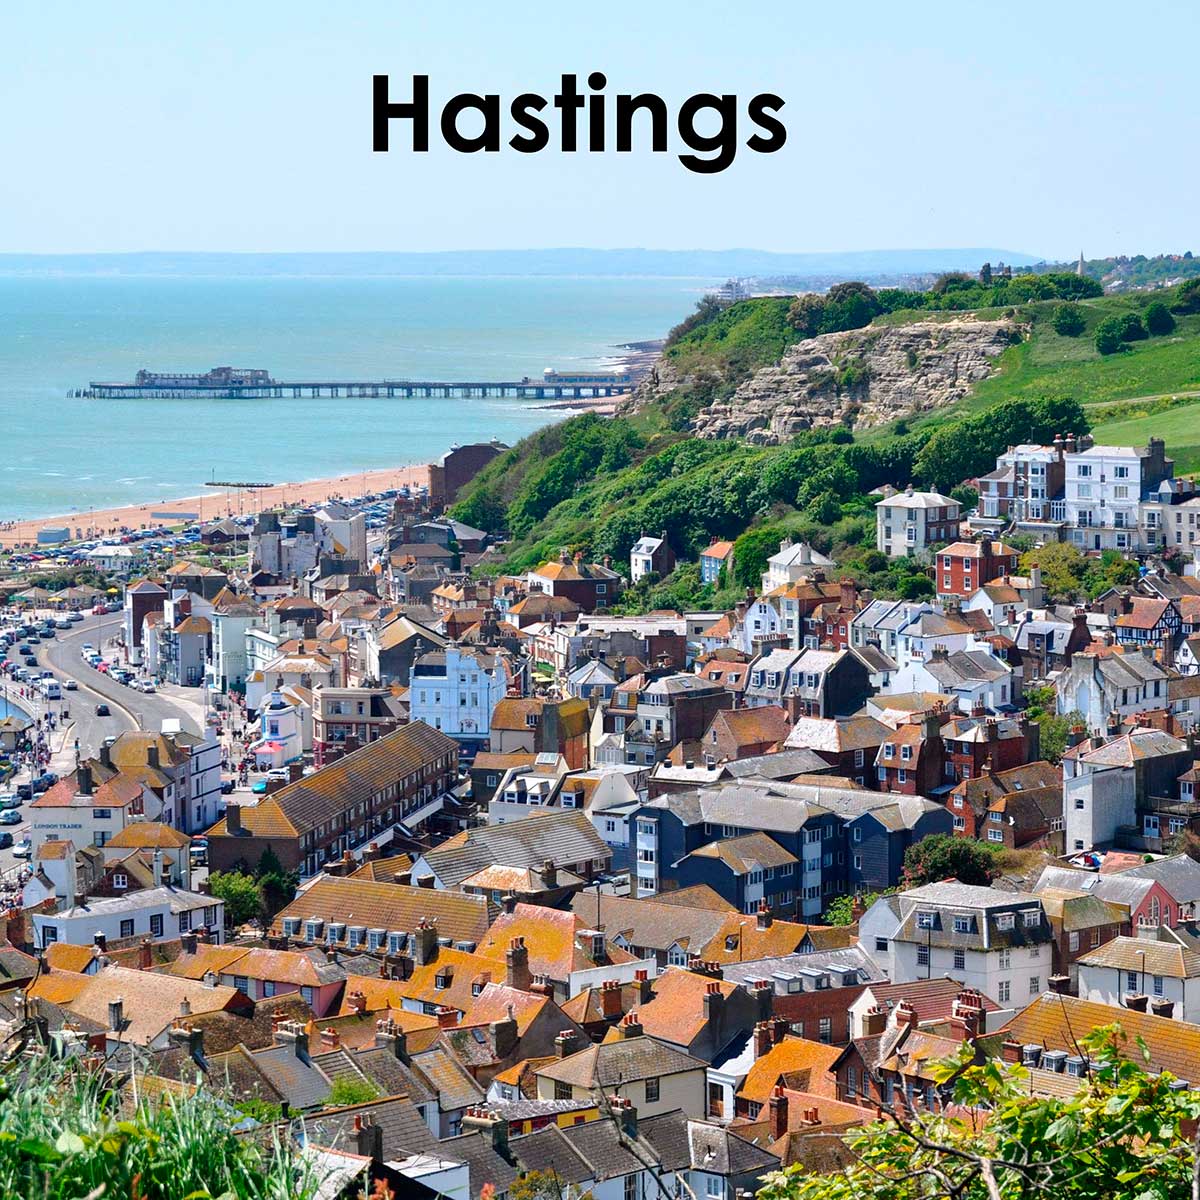 Hastings